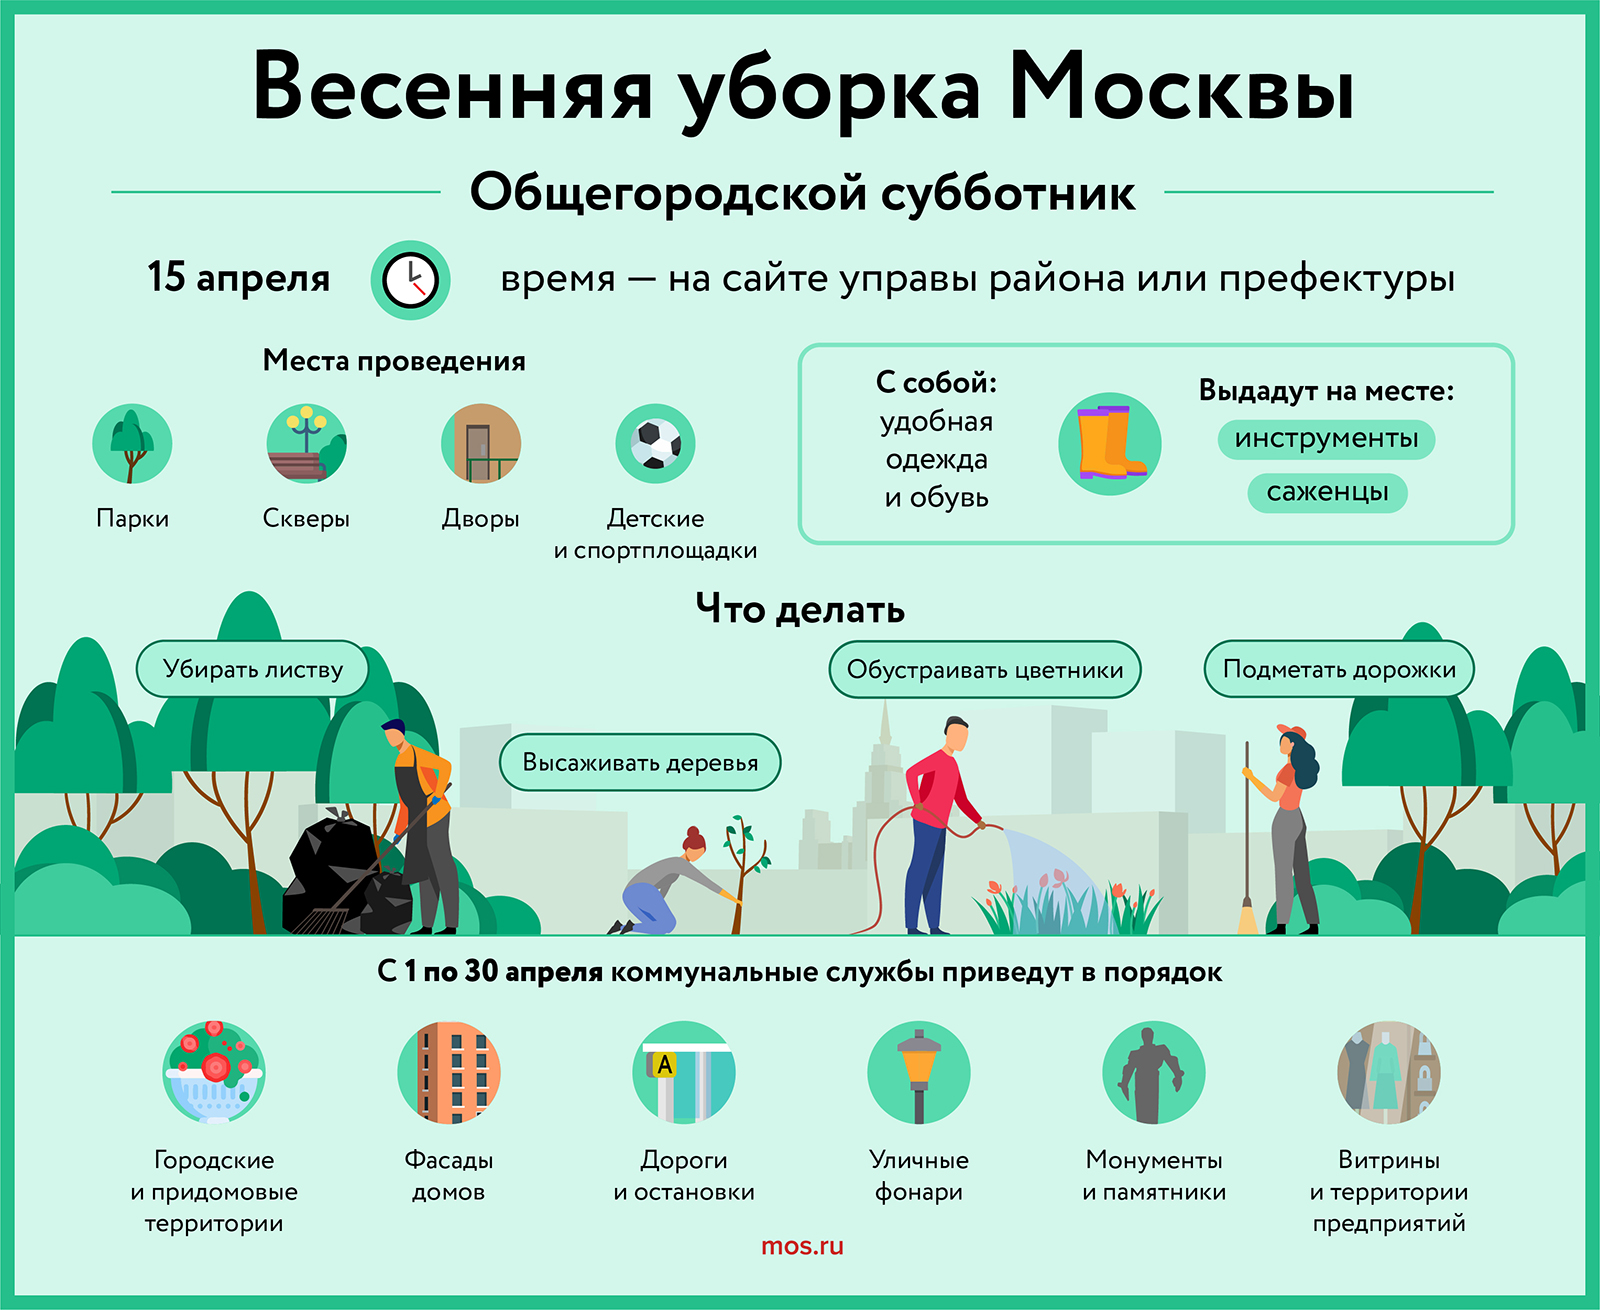 Vesennyaya_uborka_Moskvi_31032023.jpg